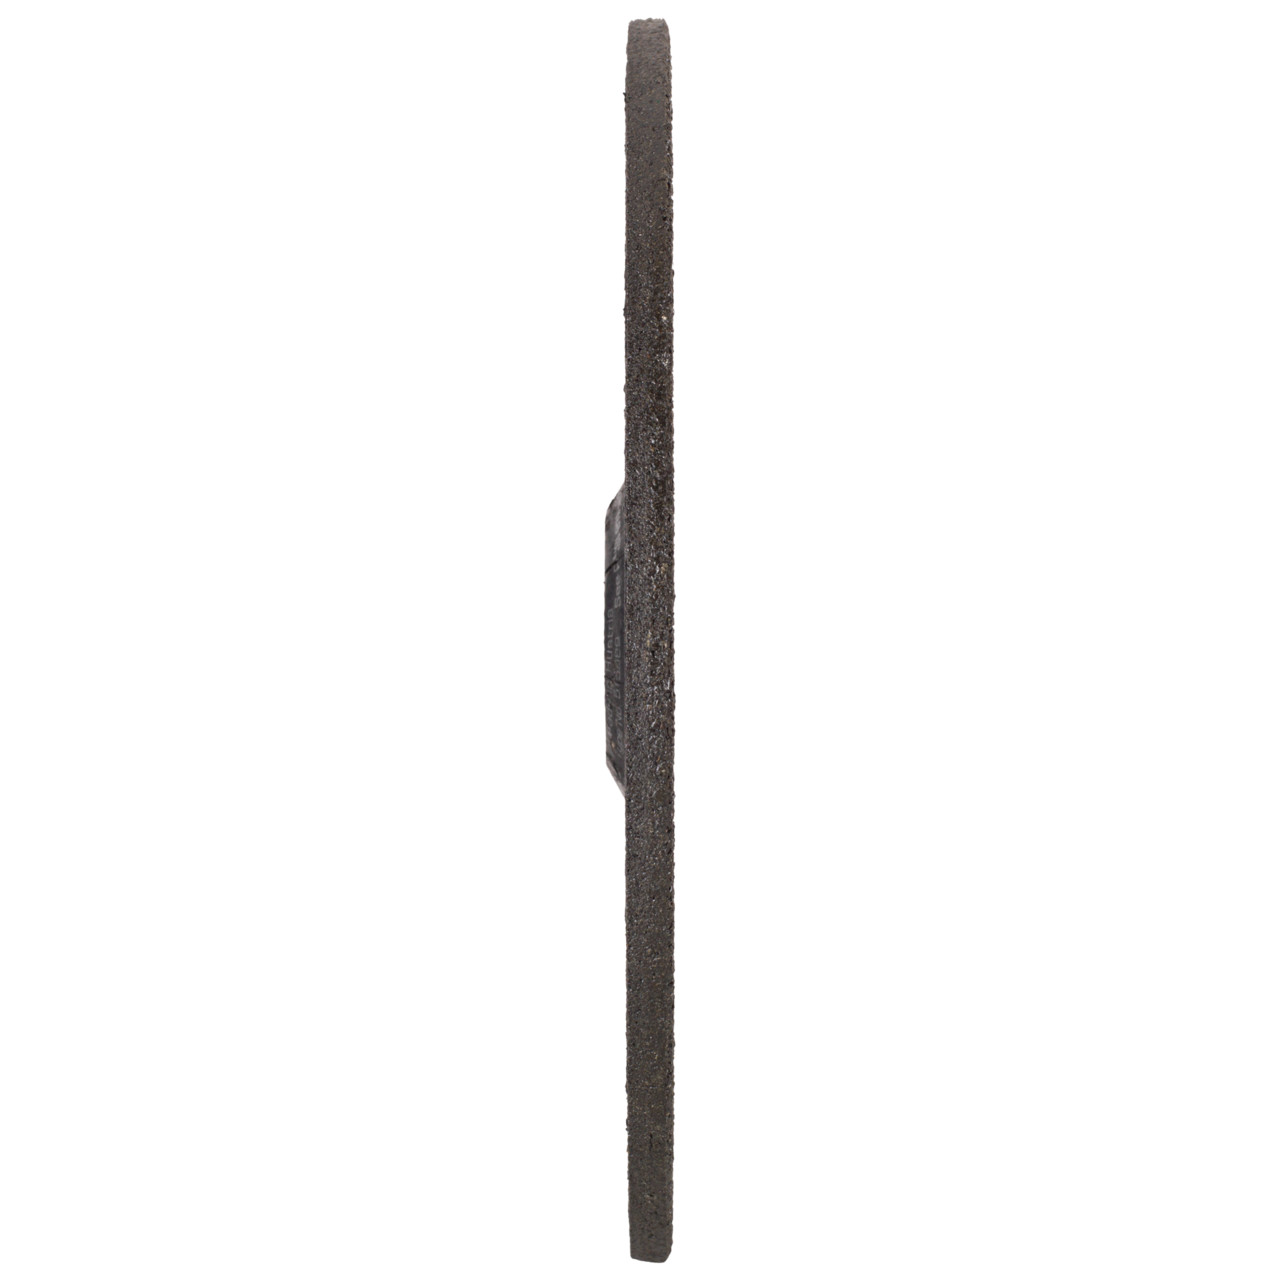 TYROLIT slijpschijf DxUxH 178x7x22,23 Silentio voor roestvrij staal, vorm: 27 - offset-uitvoering, Art. 515988